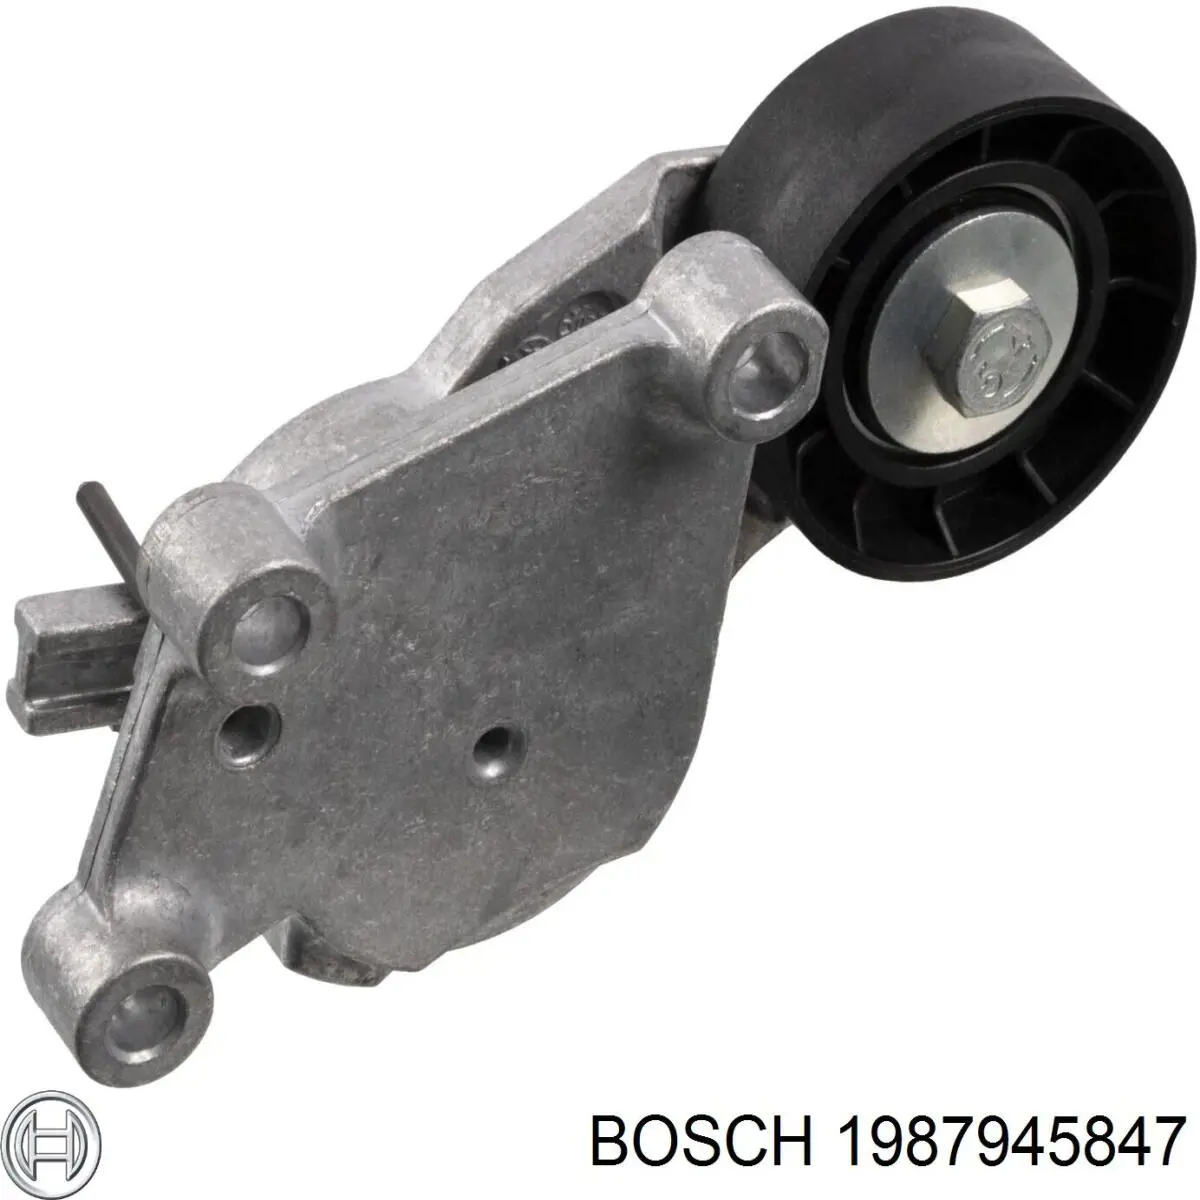 1987945847 Bosch tensor de correa, correa poli v